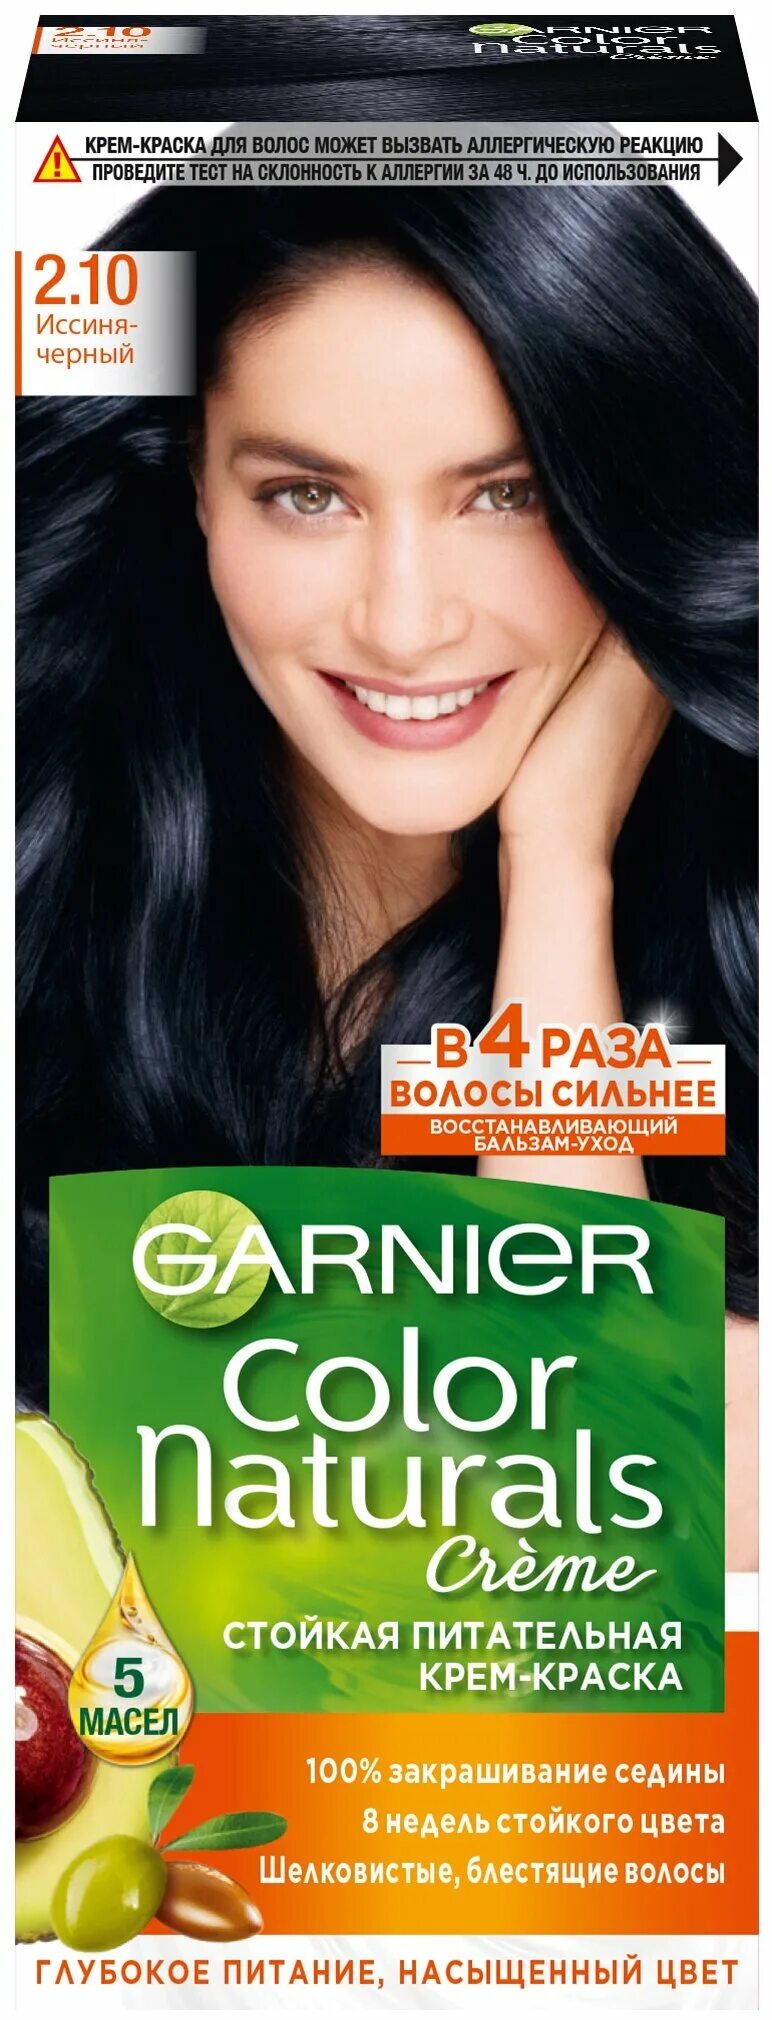 Краска для волос темная гарньер. Garnier Color naturals 2.10 иссиня черный. Краска для волос гарньер темный. Краска для волос гарньер 2.10. Краска для волос гарньер черный цвет.